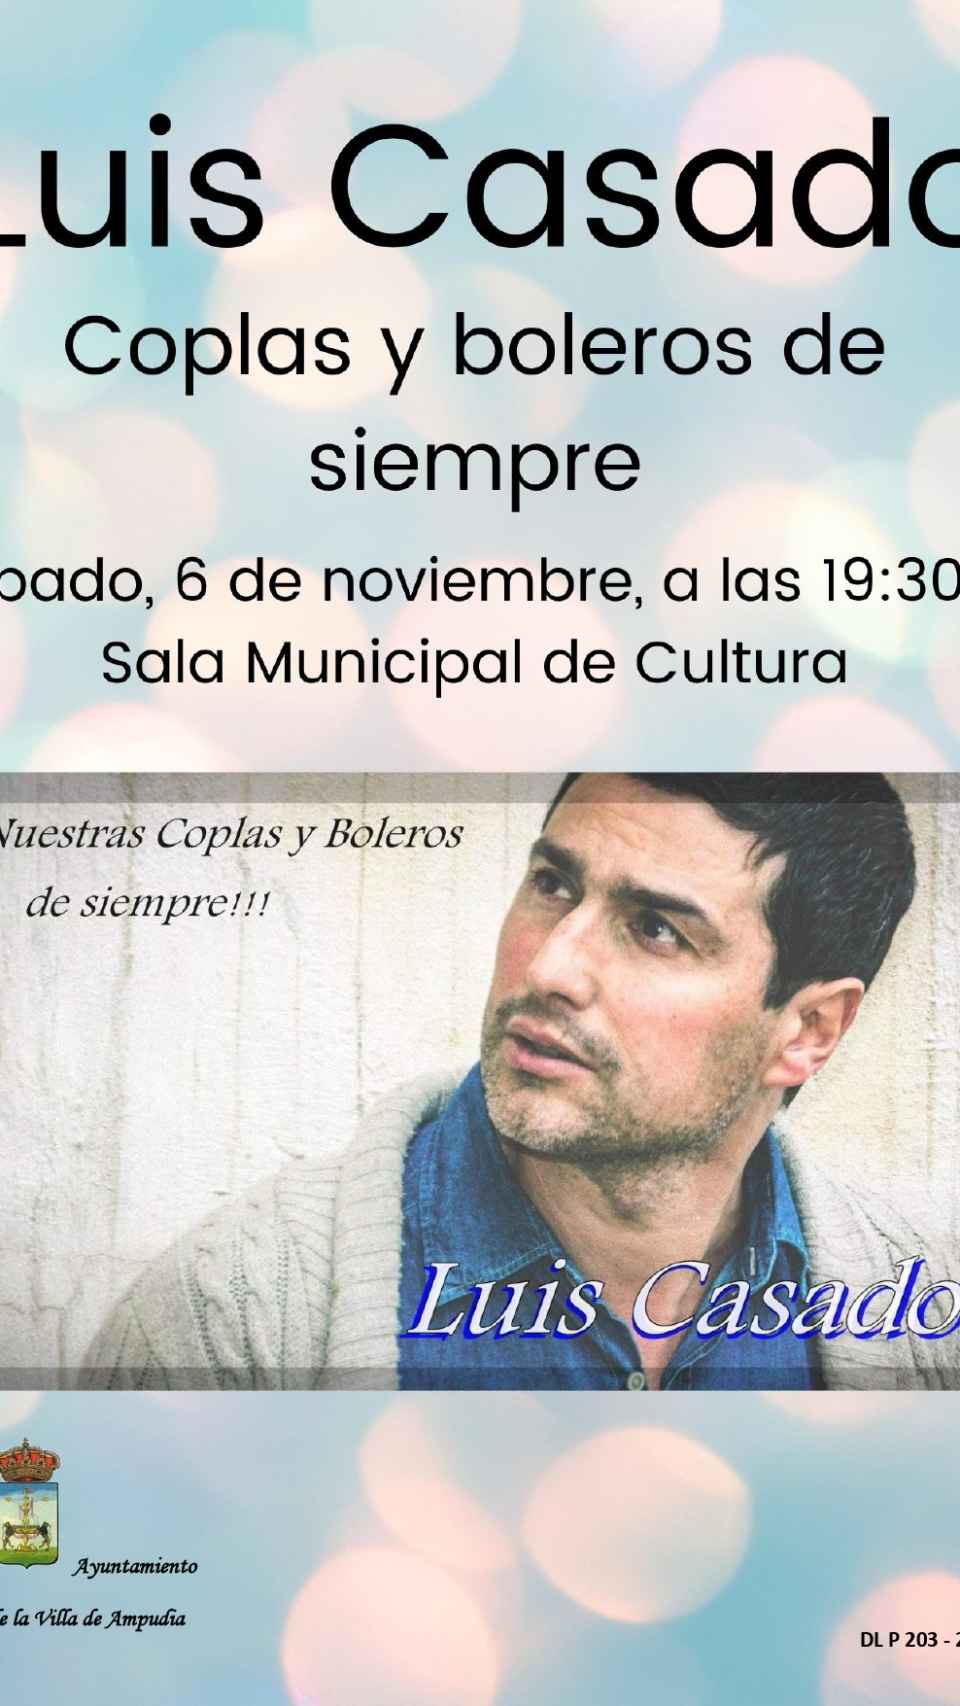 Cartel informativo de la actuación de Luis Casado